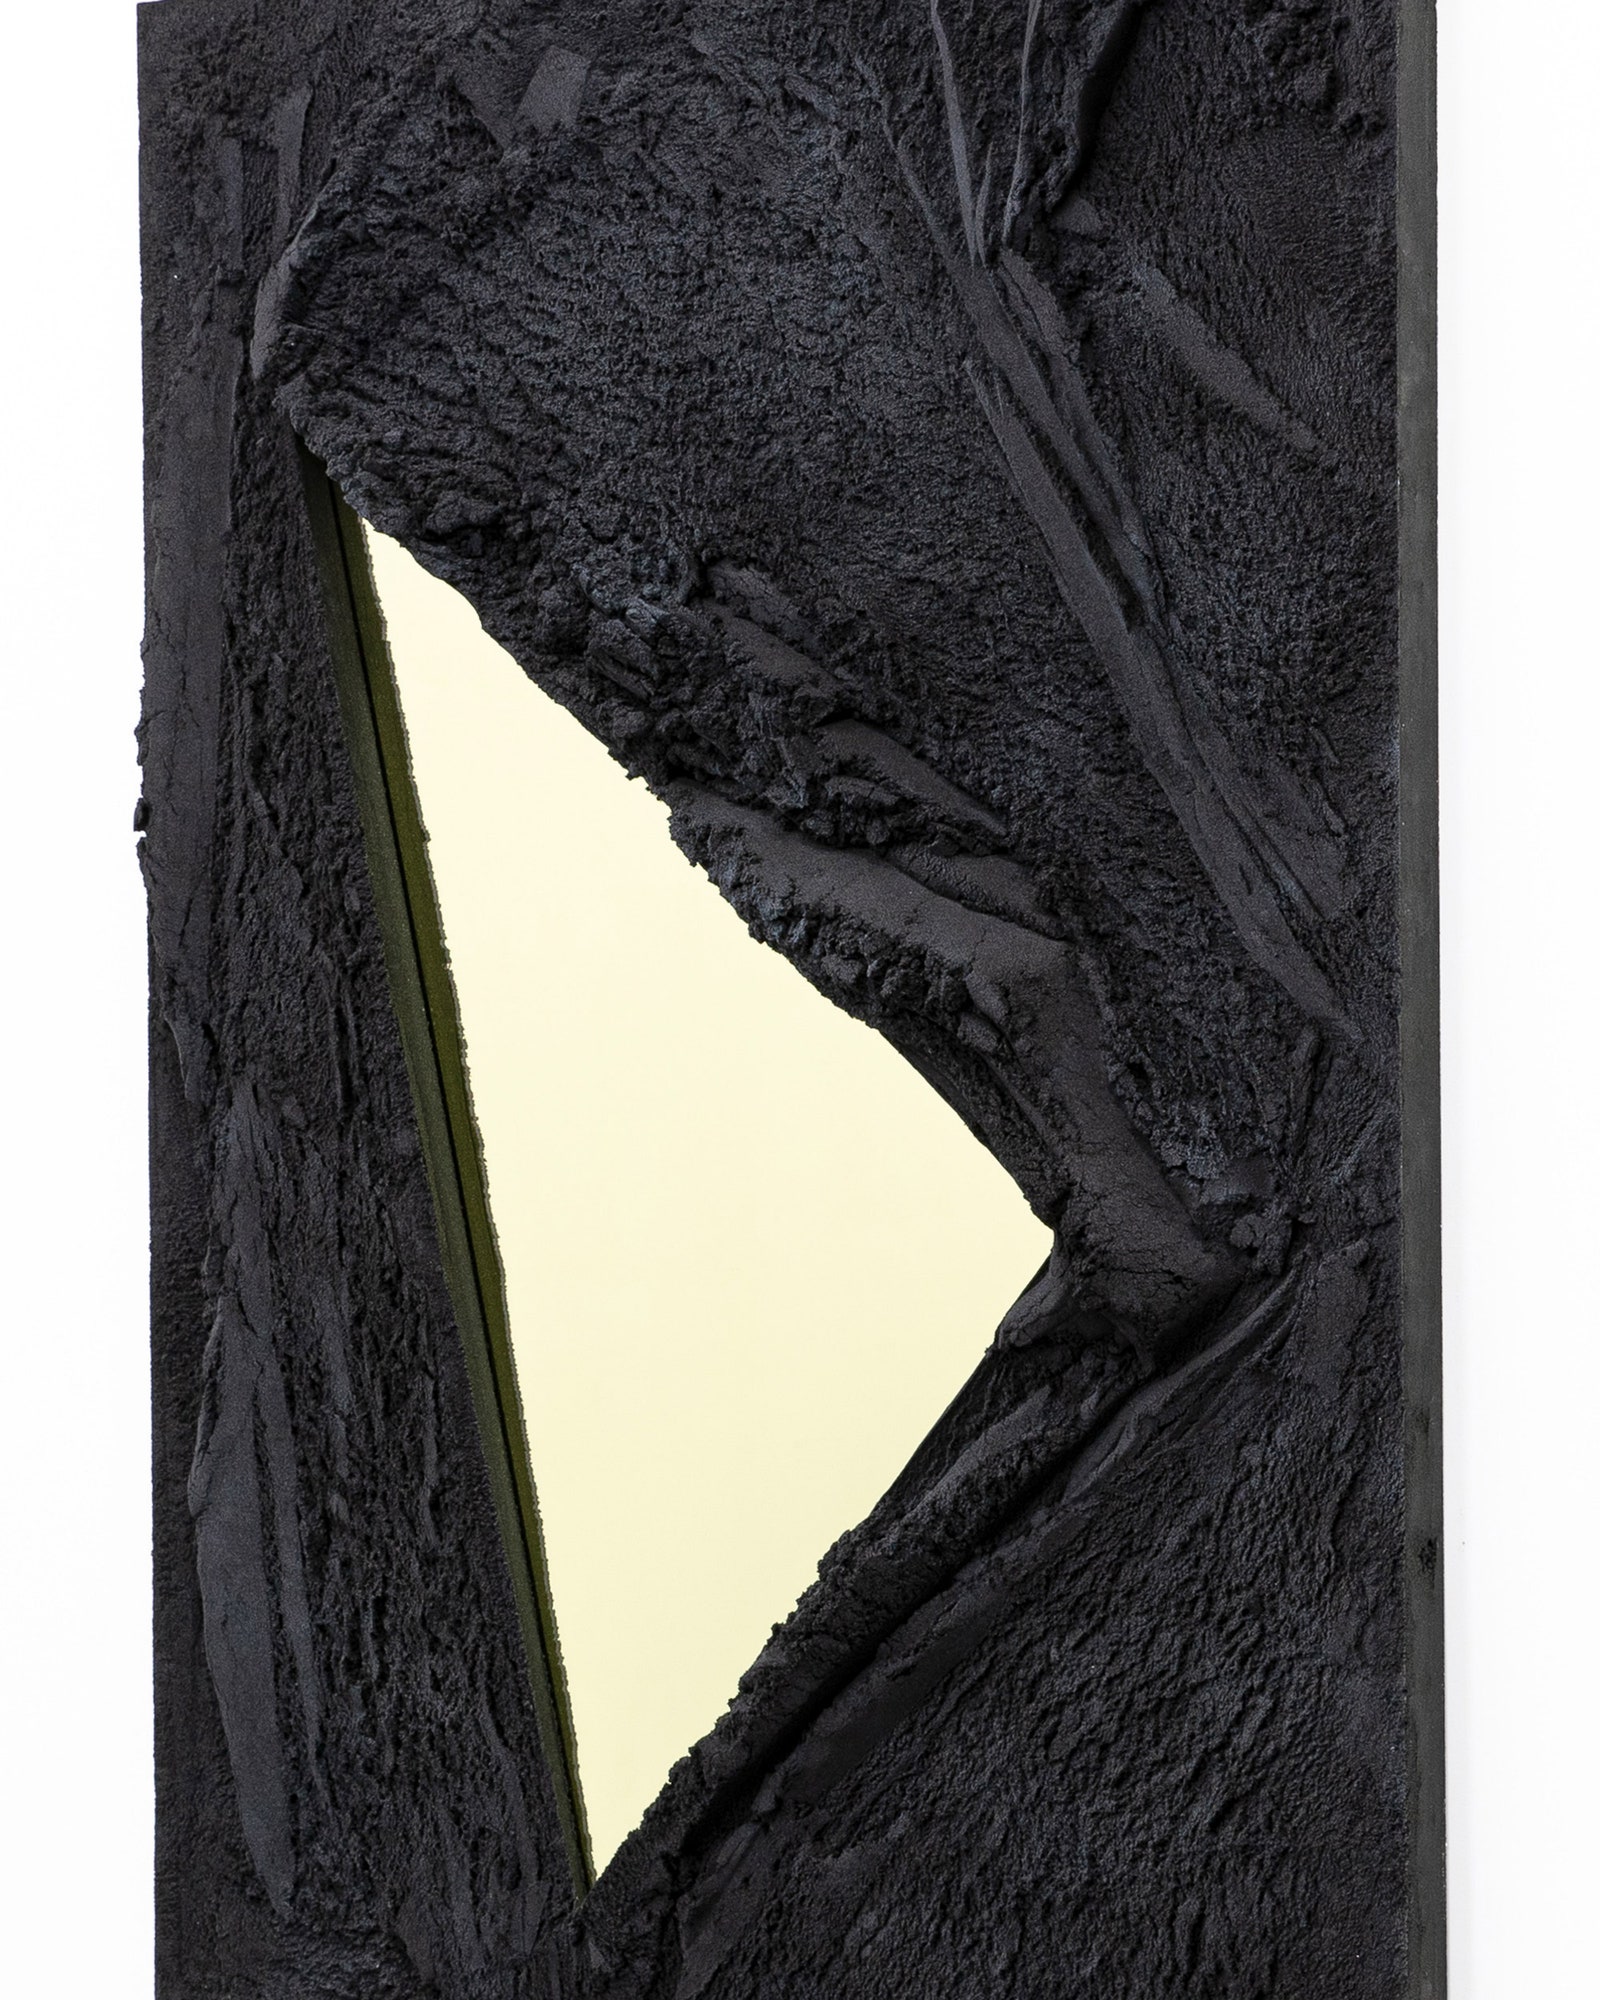 Зеркала в вулканических рамах от Фернандо Мастранджело